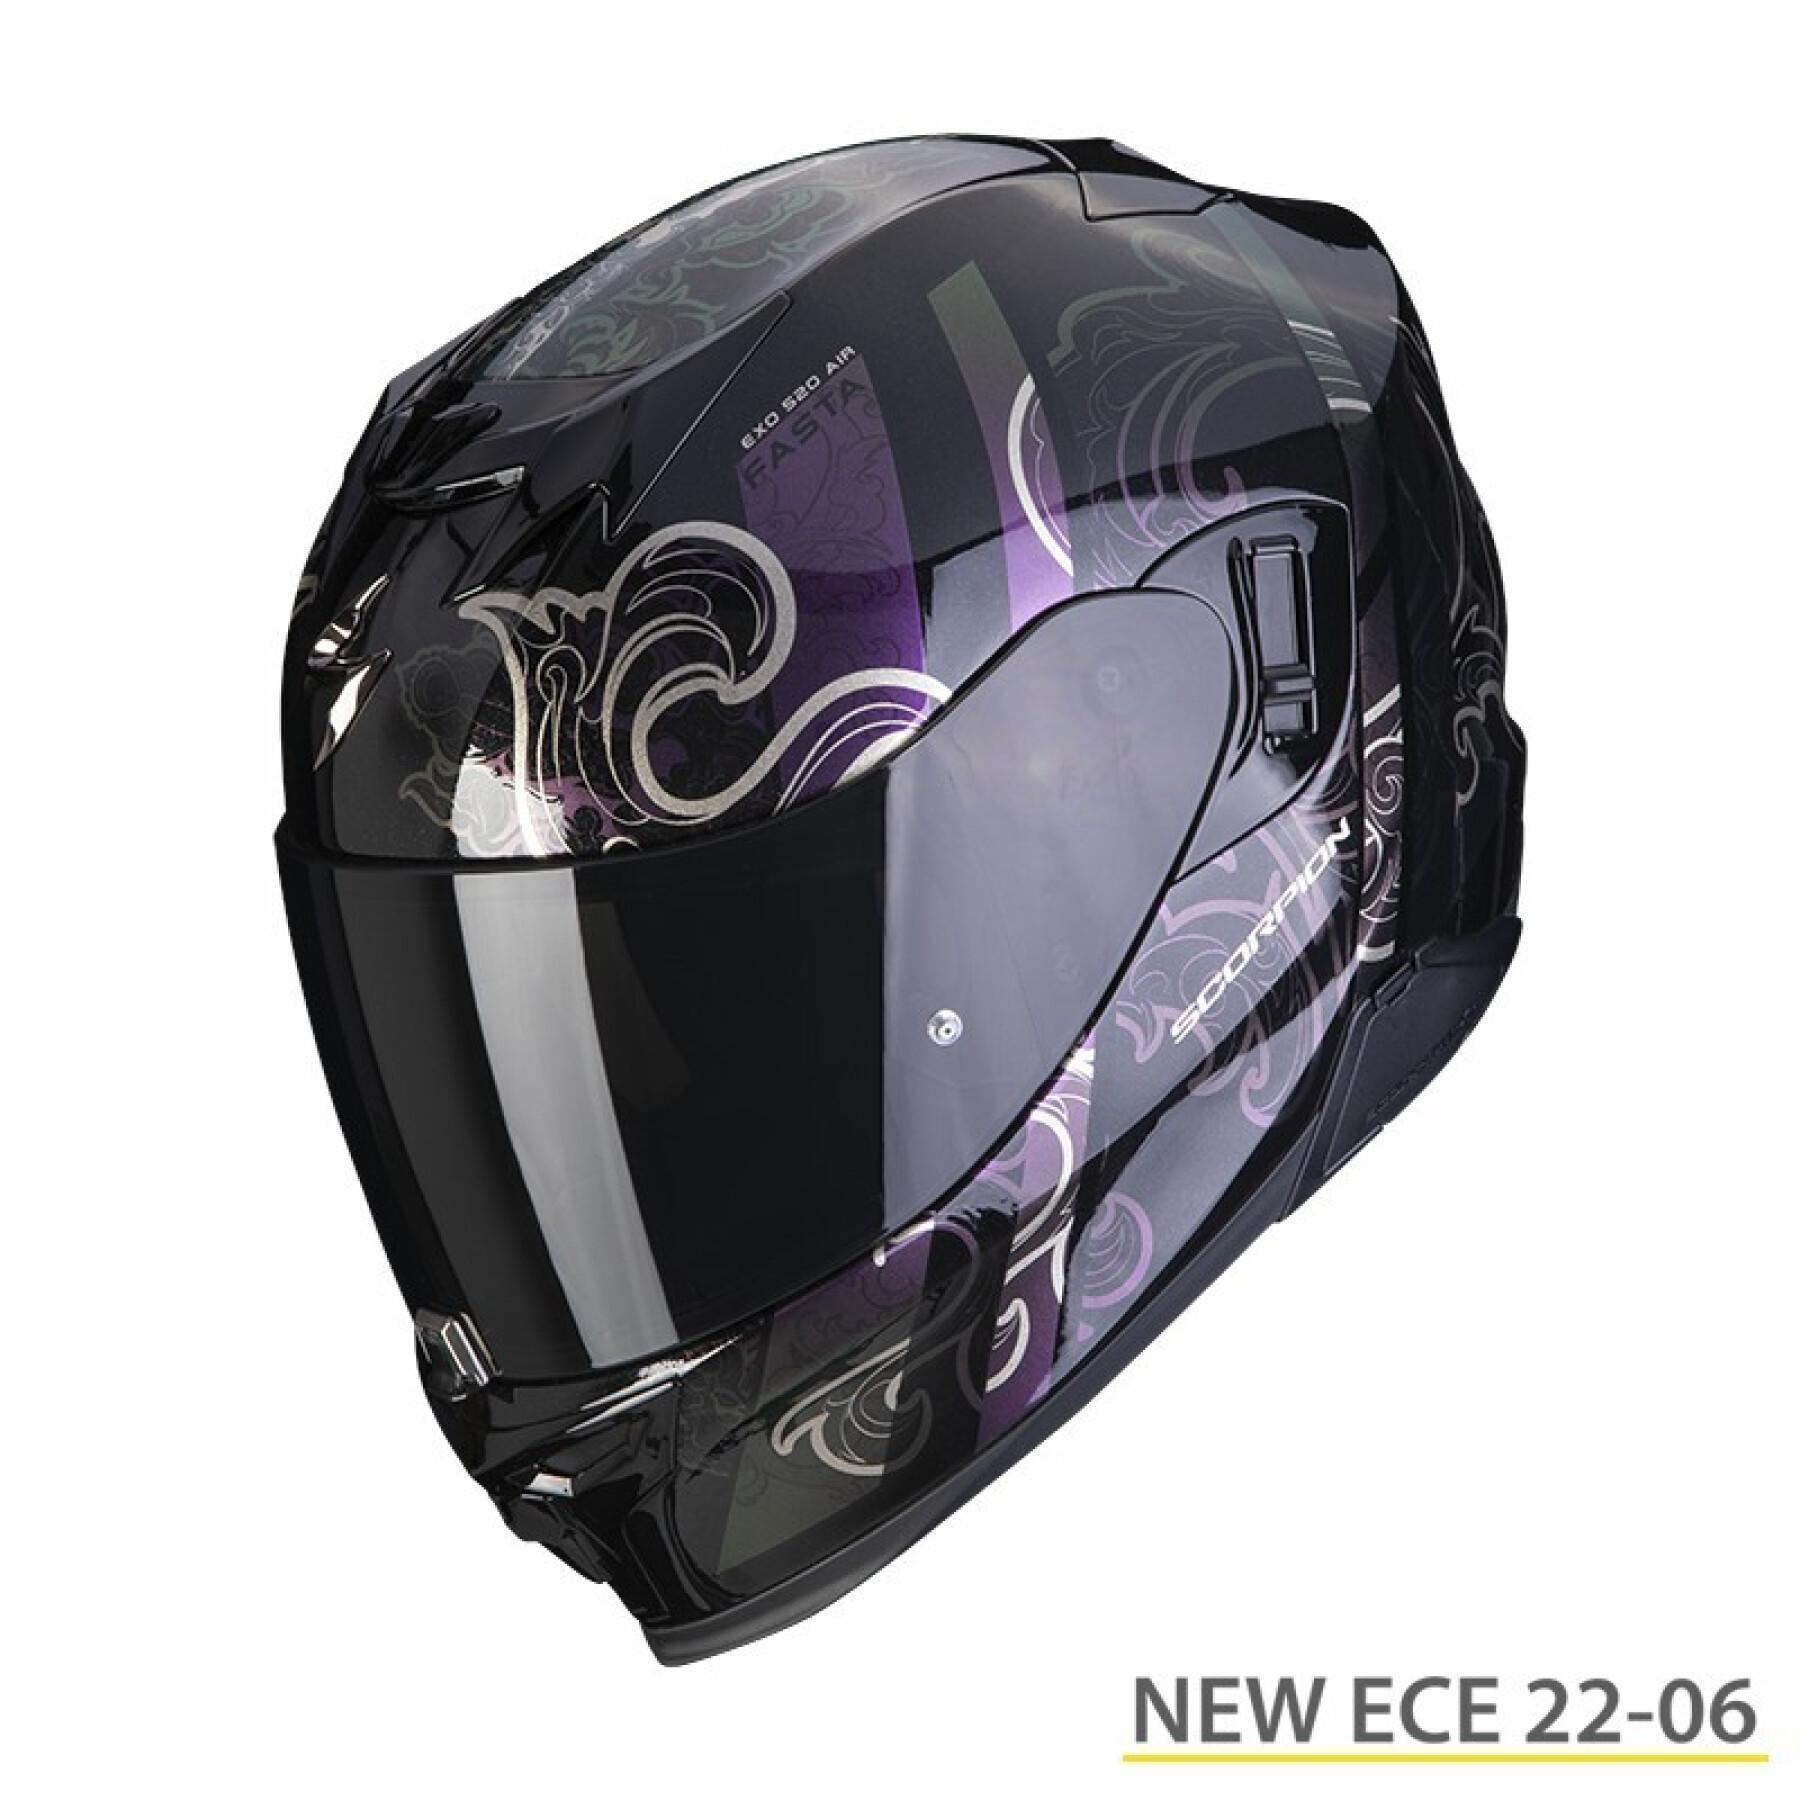 Kask motocyklowy z pełną twarzą Scorpion Exo-520 Evo Air Fasta ECE 22-06